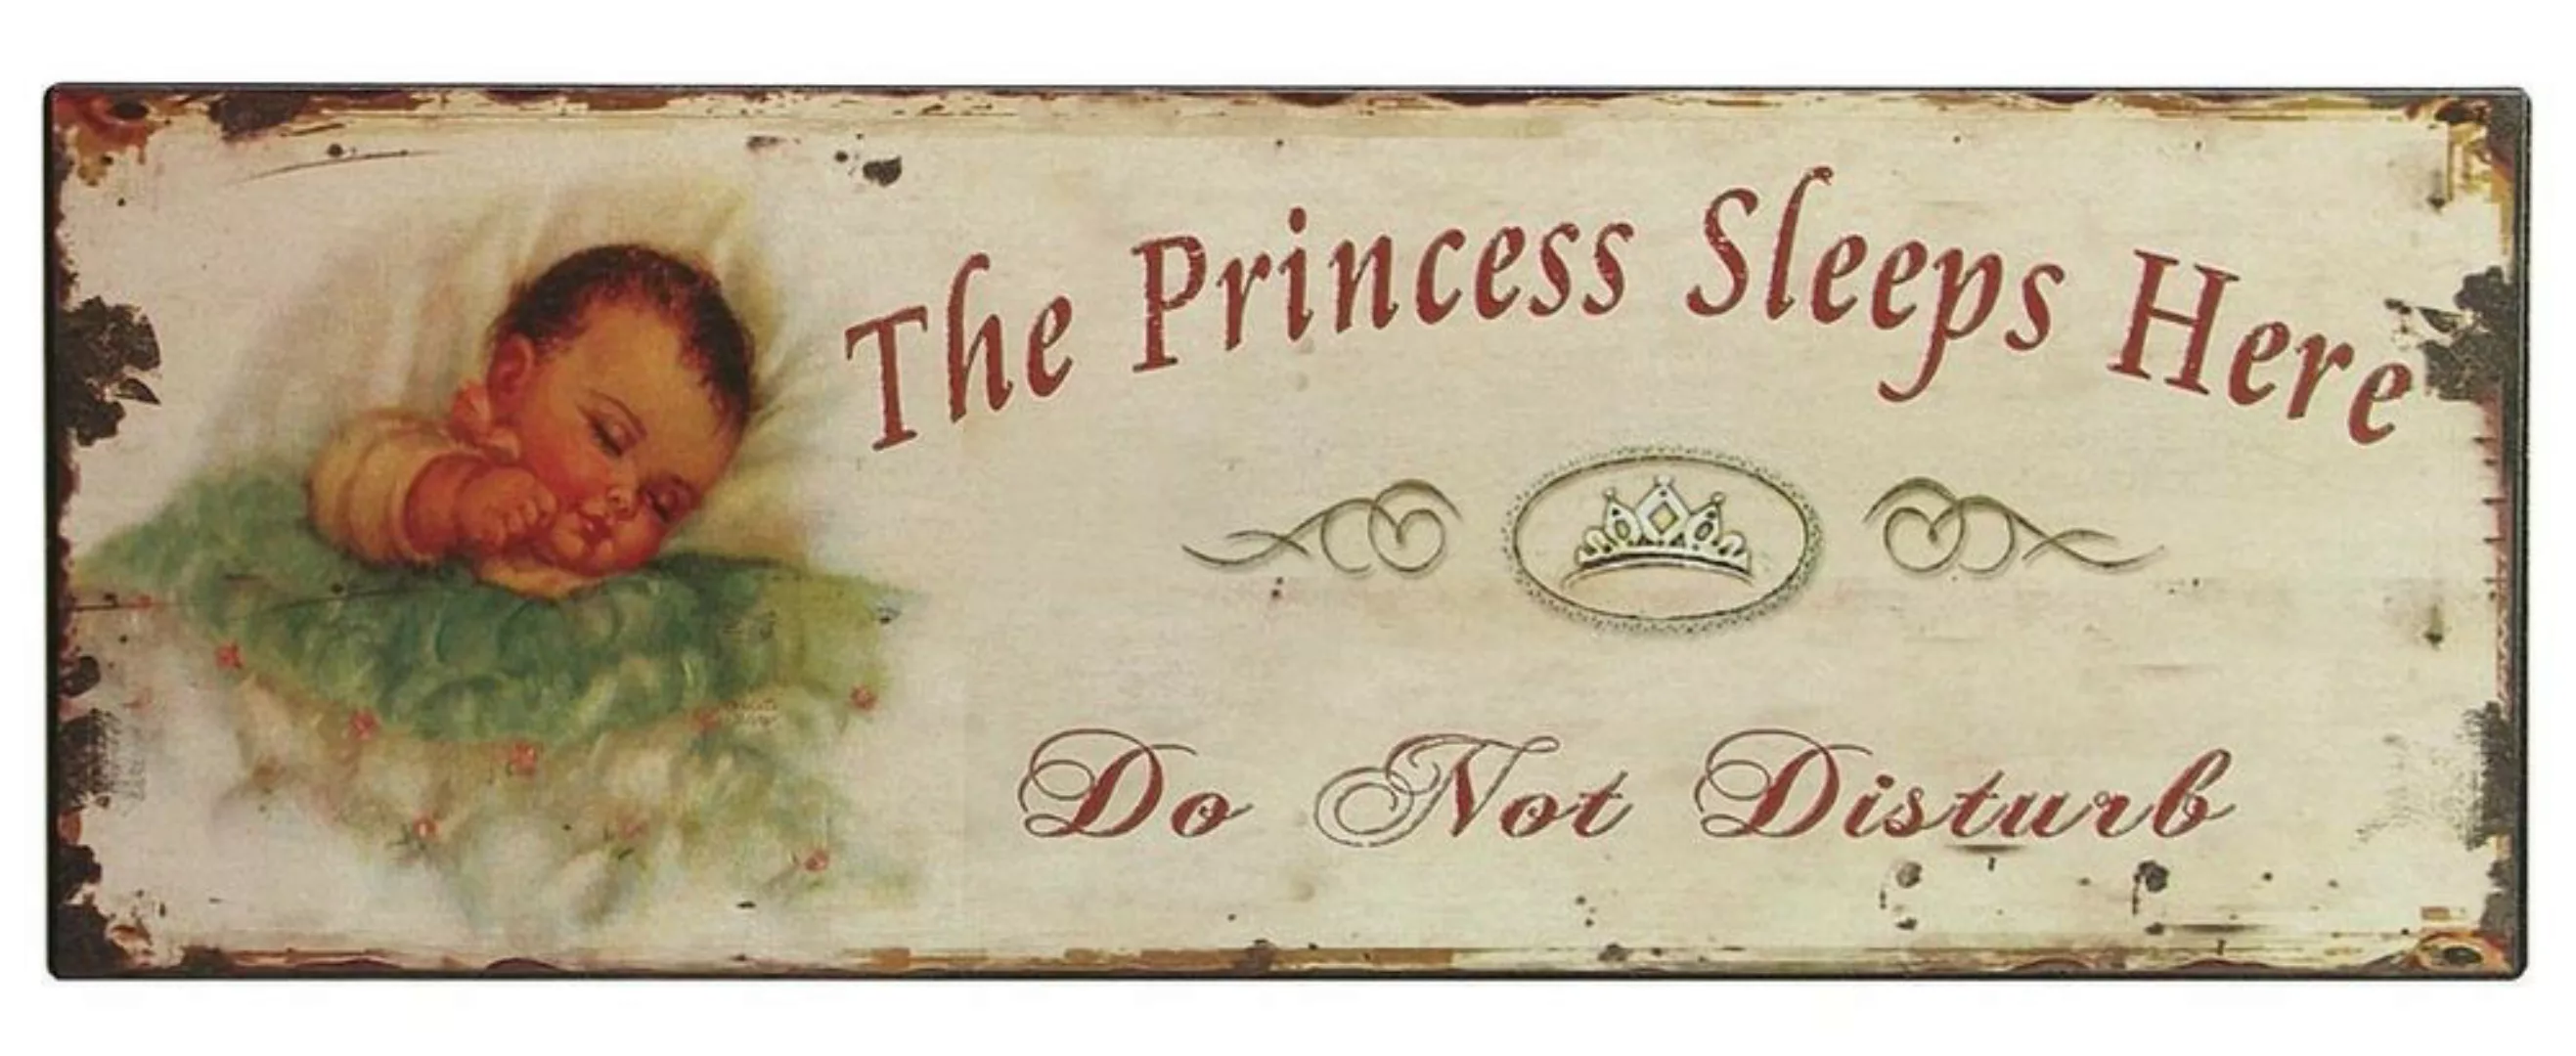 Nostalgie Blechschild "The Princess Sleeps Here" Kinderzimmer Dekoschild 36 günstig online kaufen